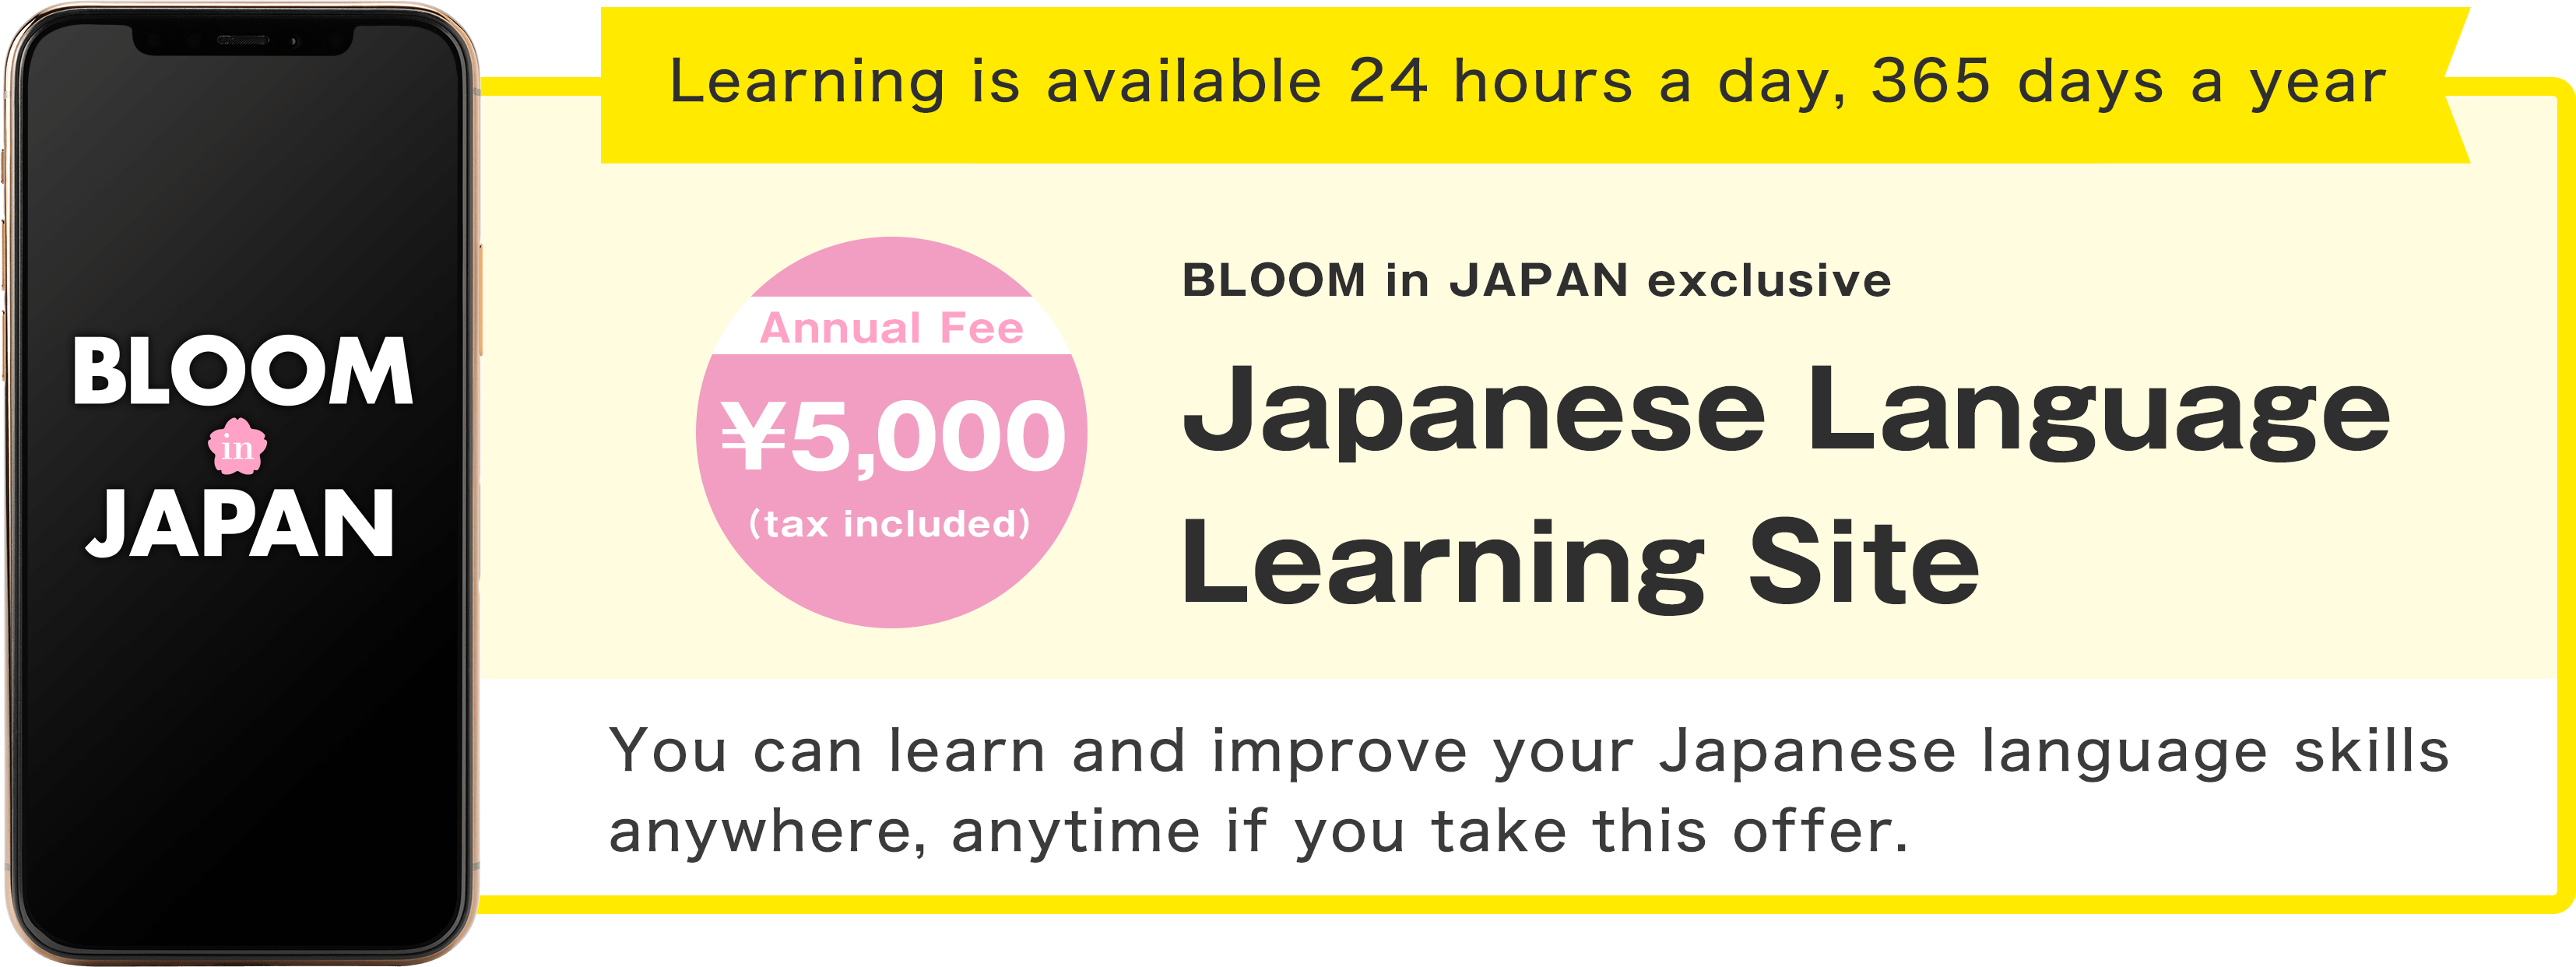 Japanese language learning site